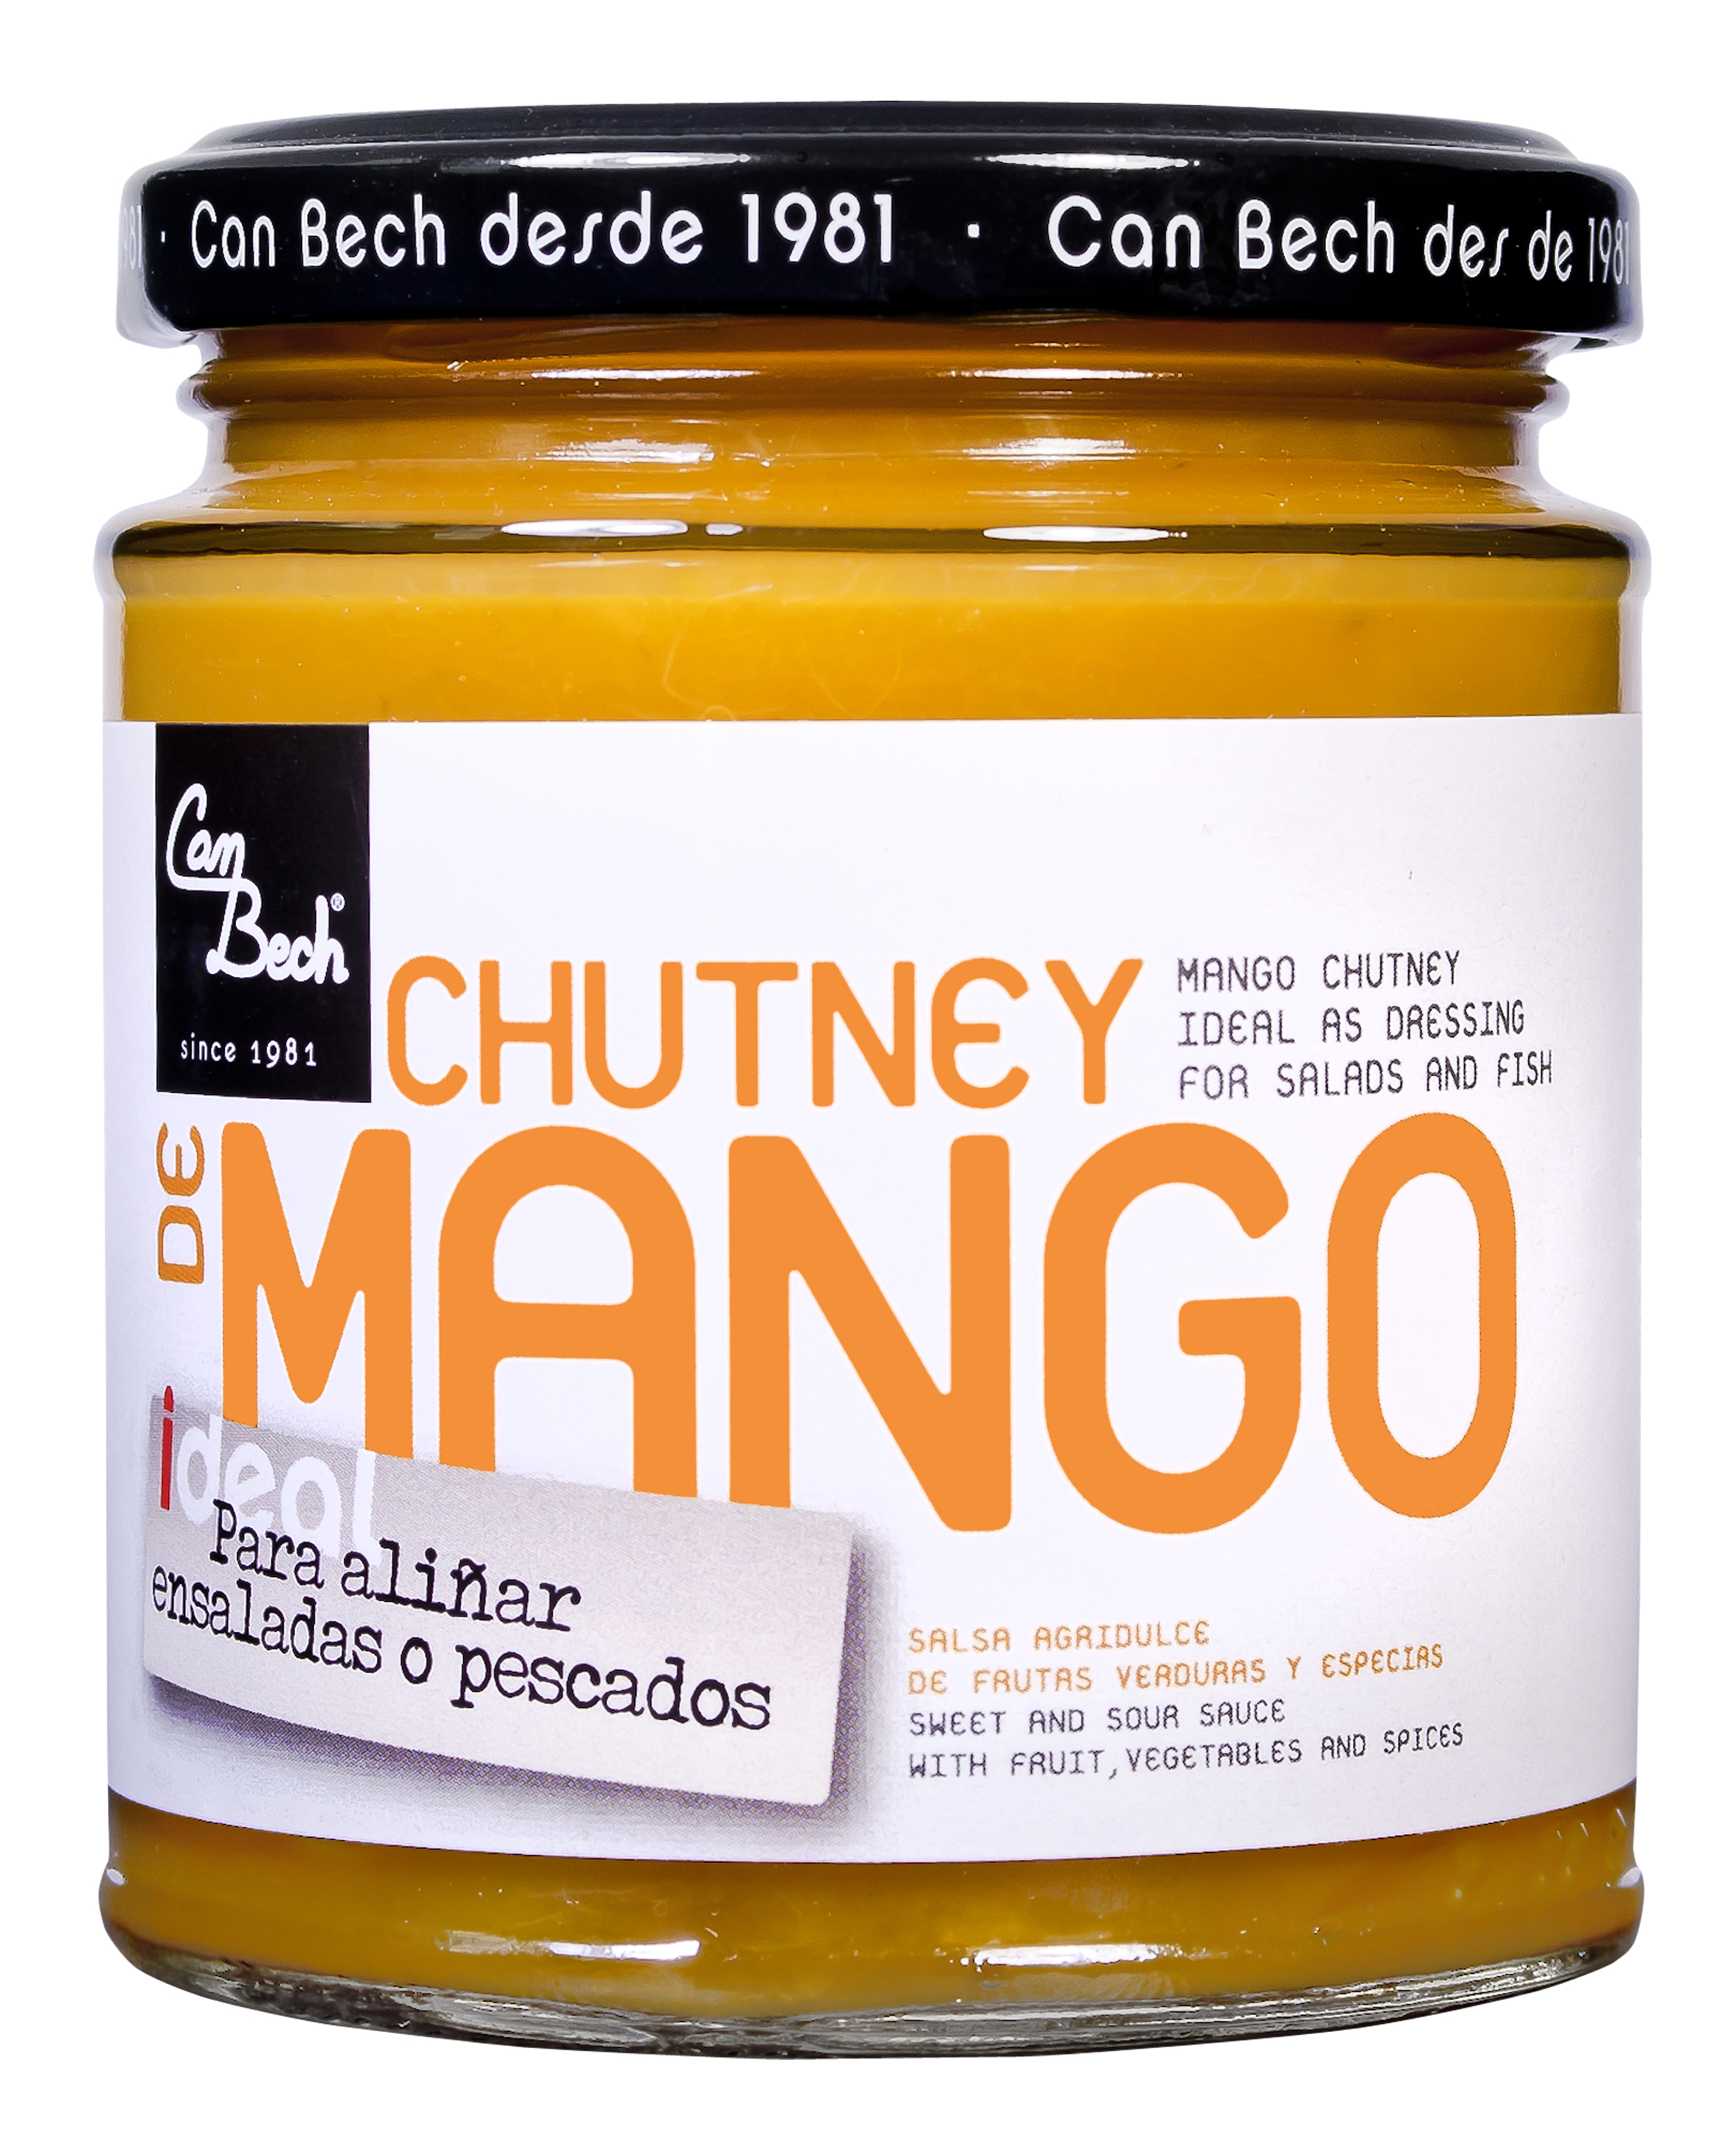  Mango Chutney